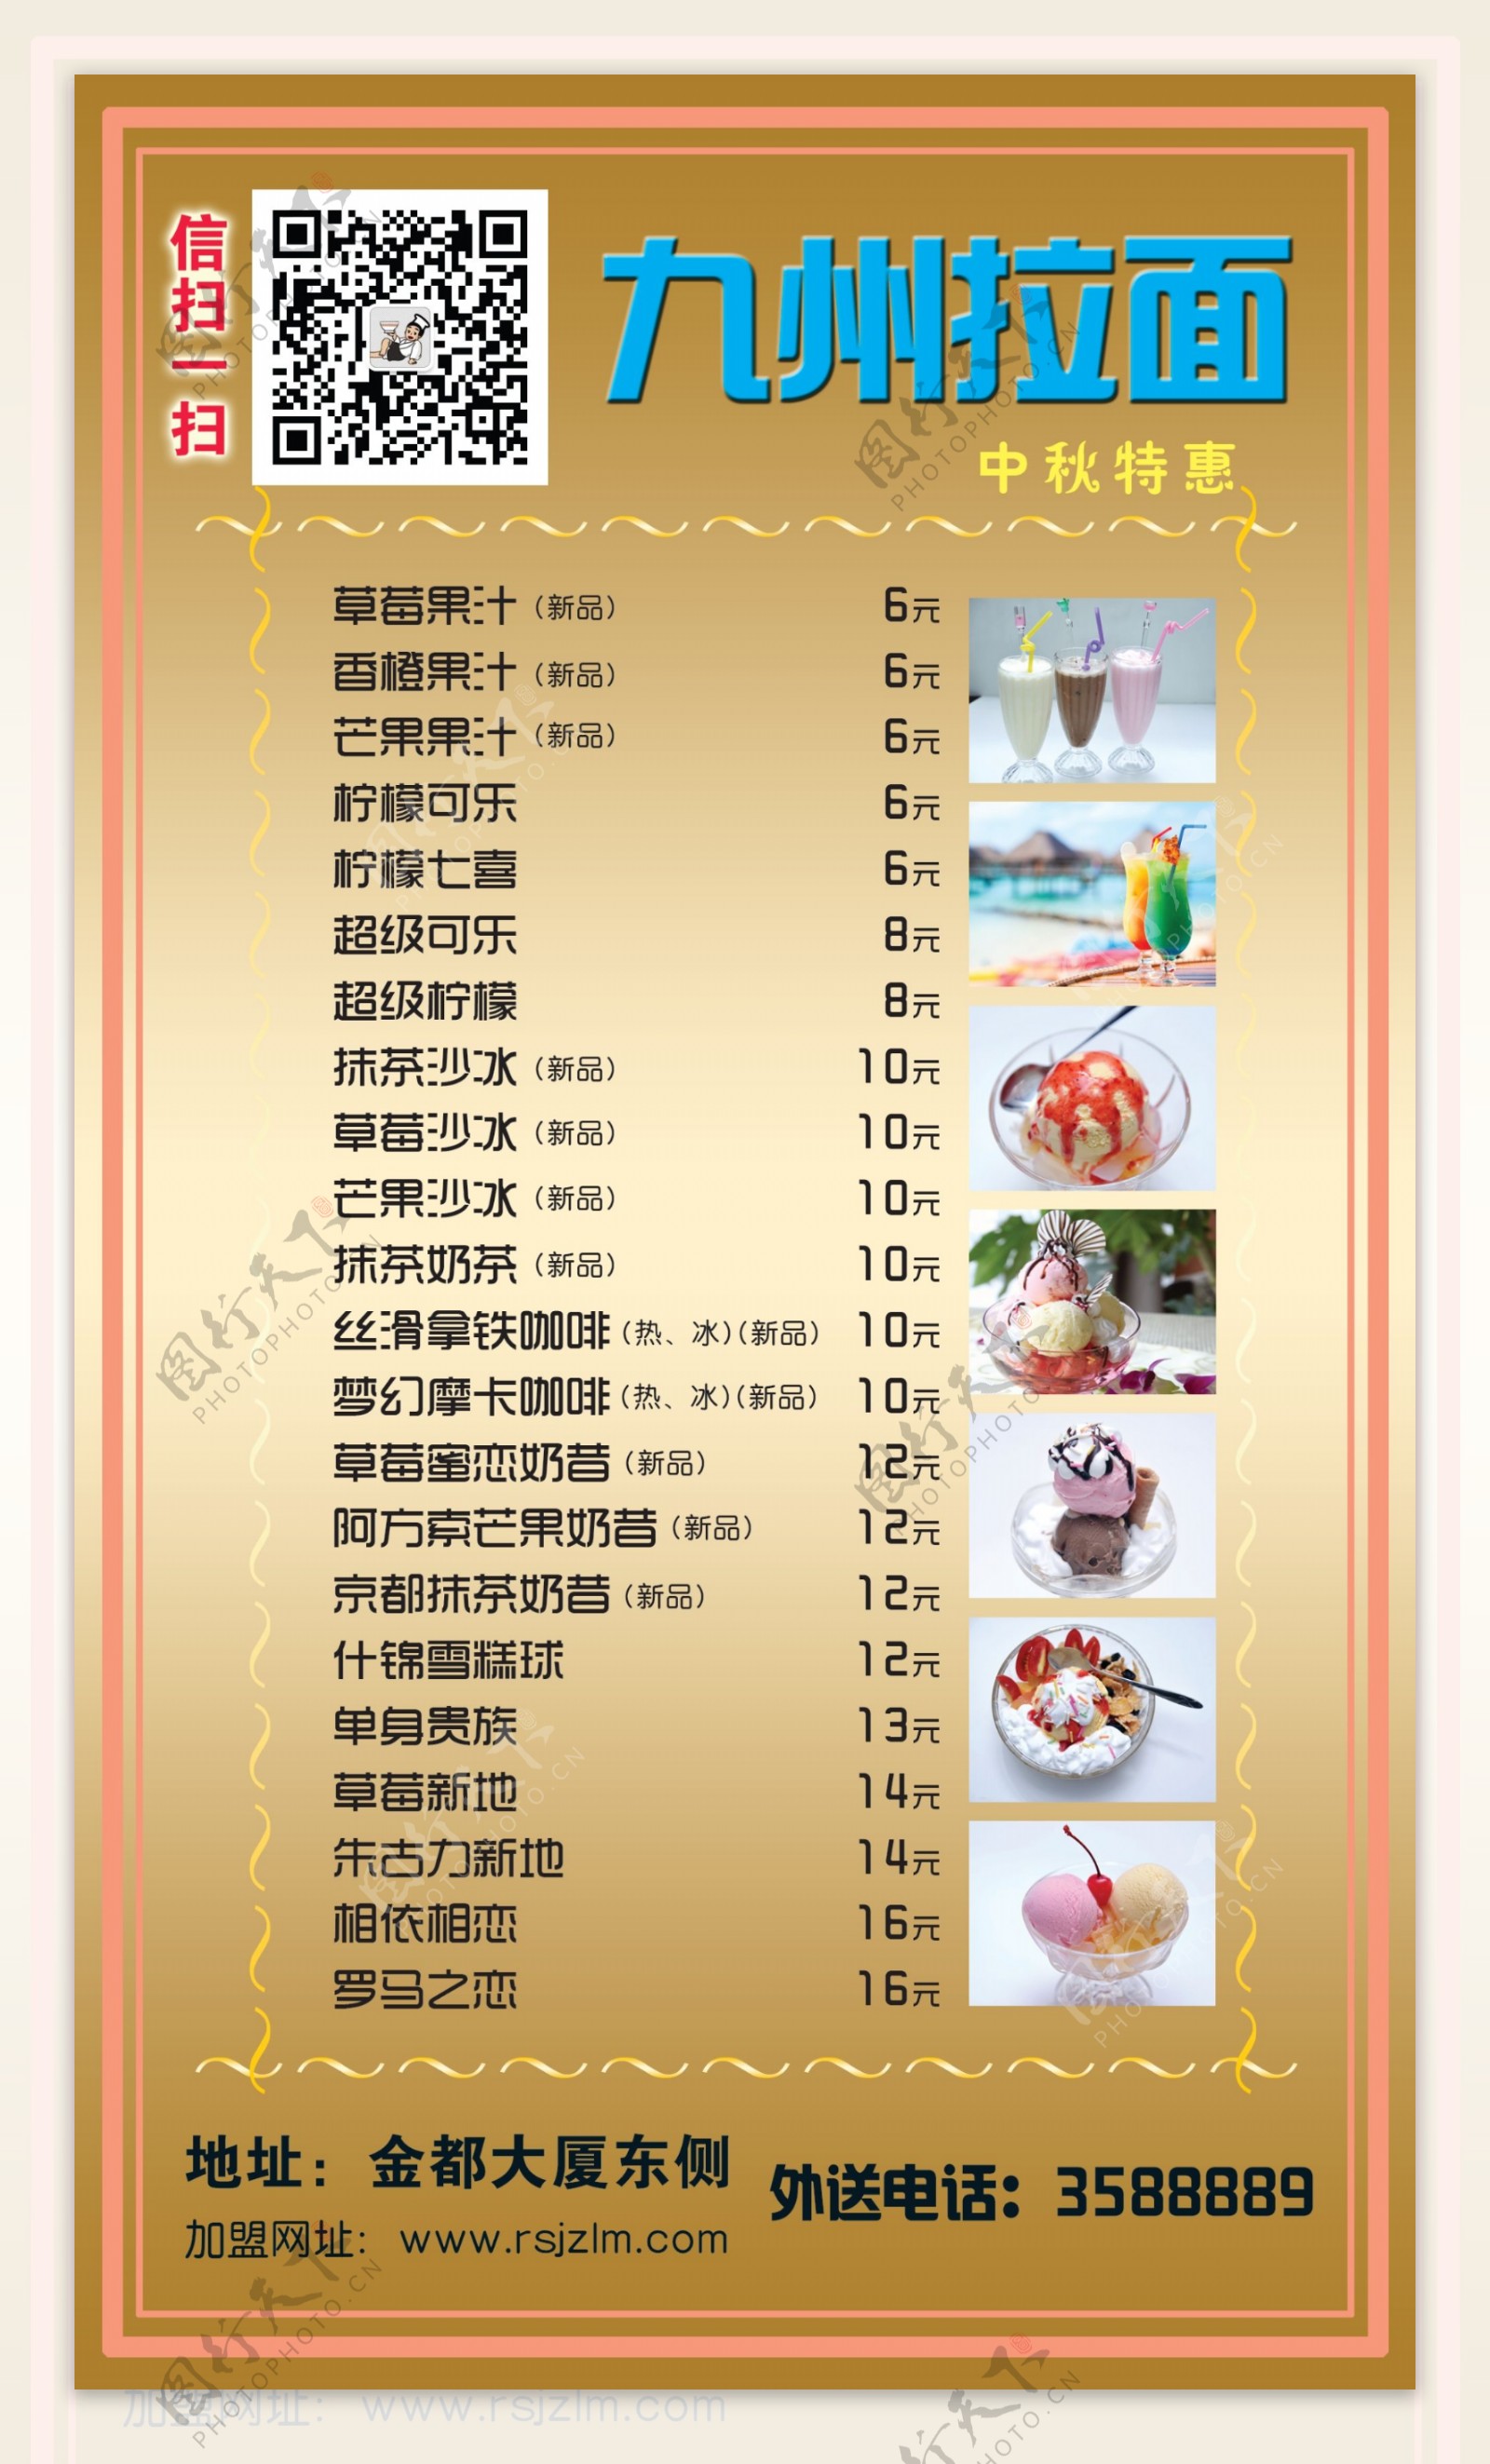 九州拉面微信菜单图片